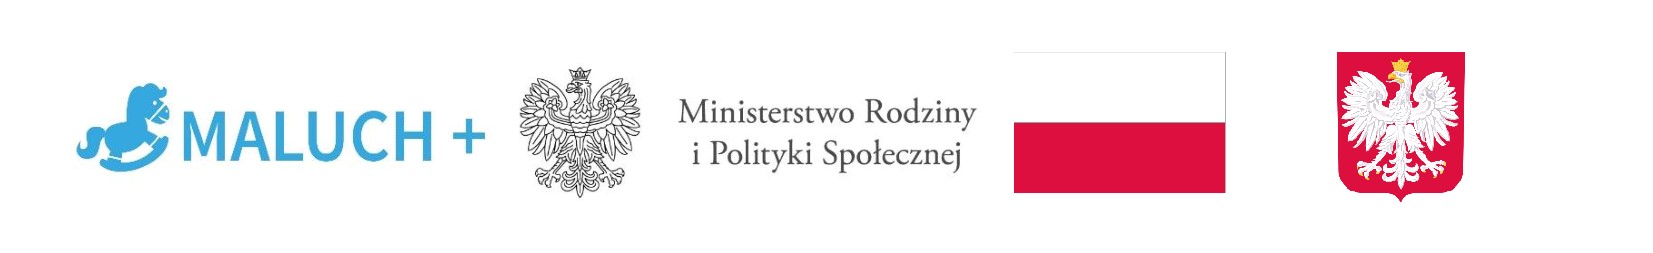 Grafika przedstawiająca logotypy: MALUCH+, Ministerstwo Rodziny i Polityki Społecznej, Flaga Polski, Godło Polski